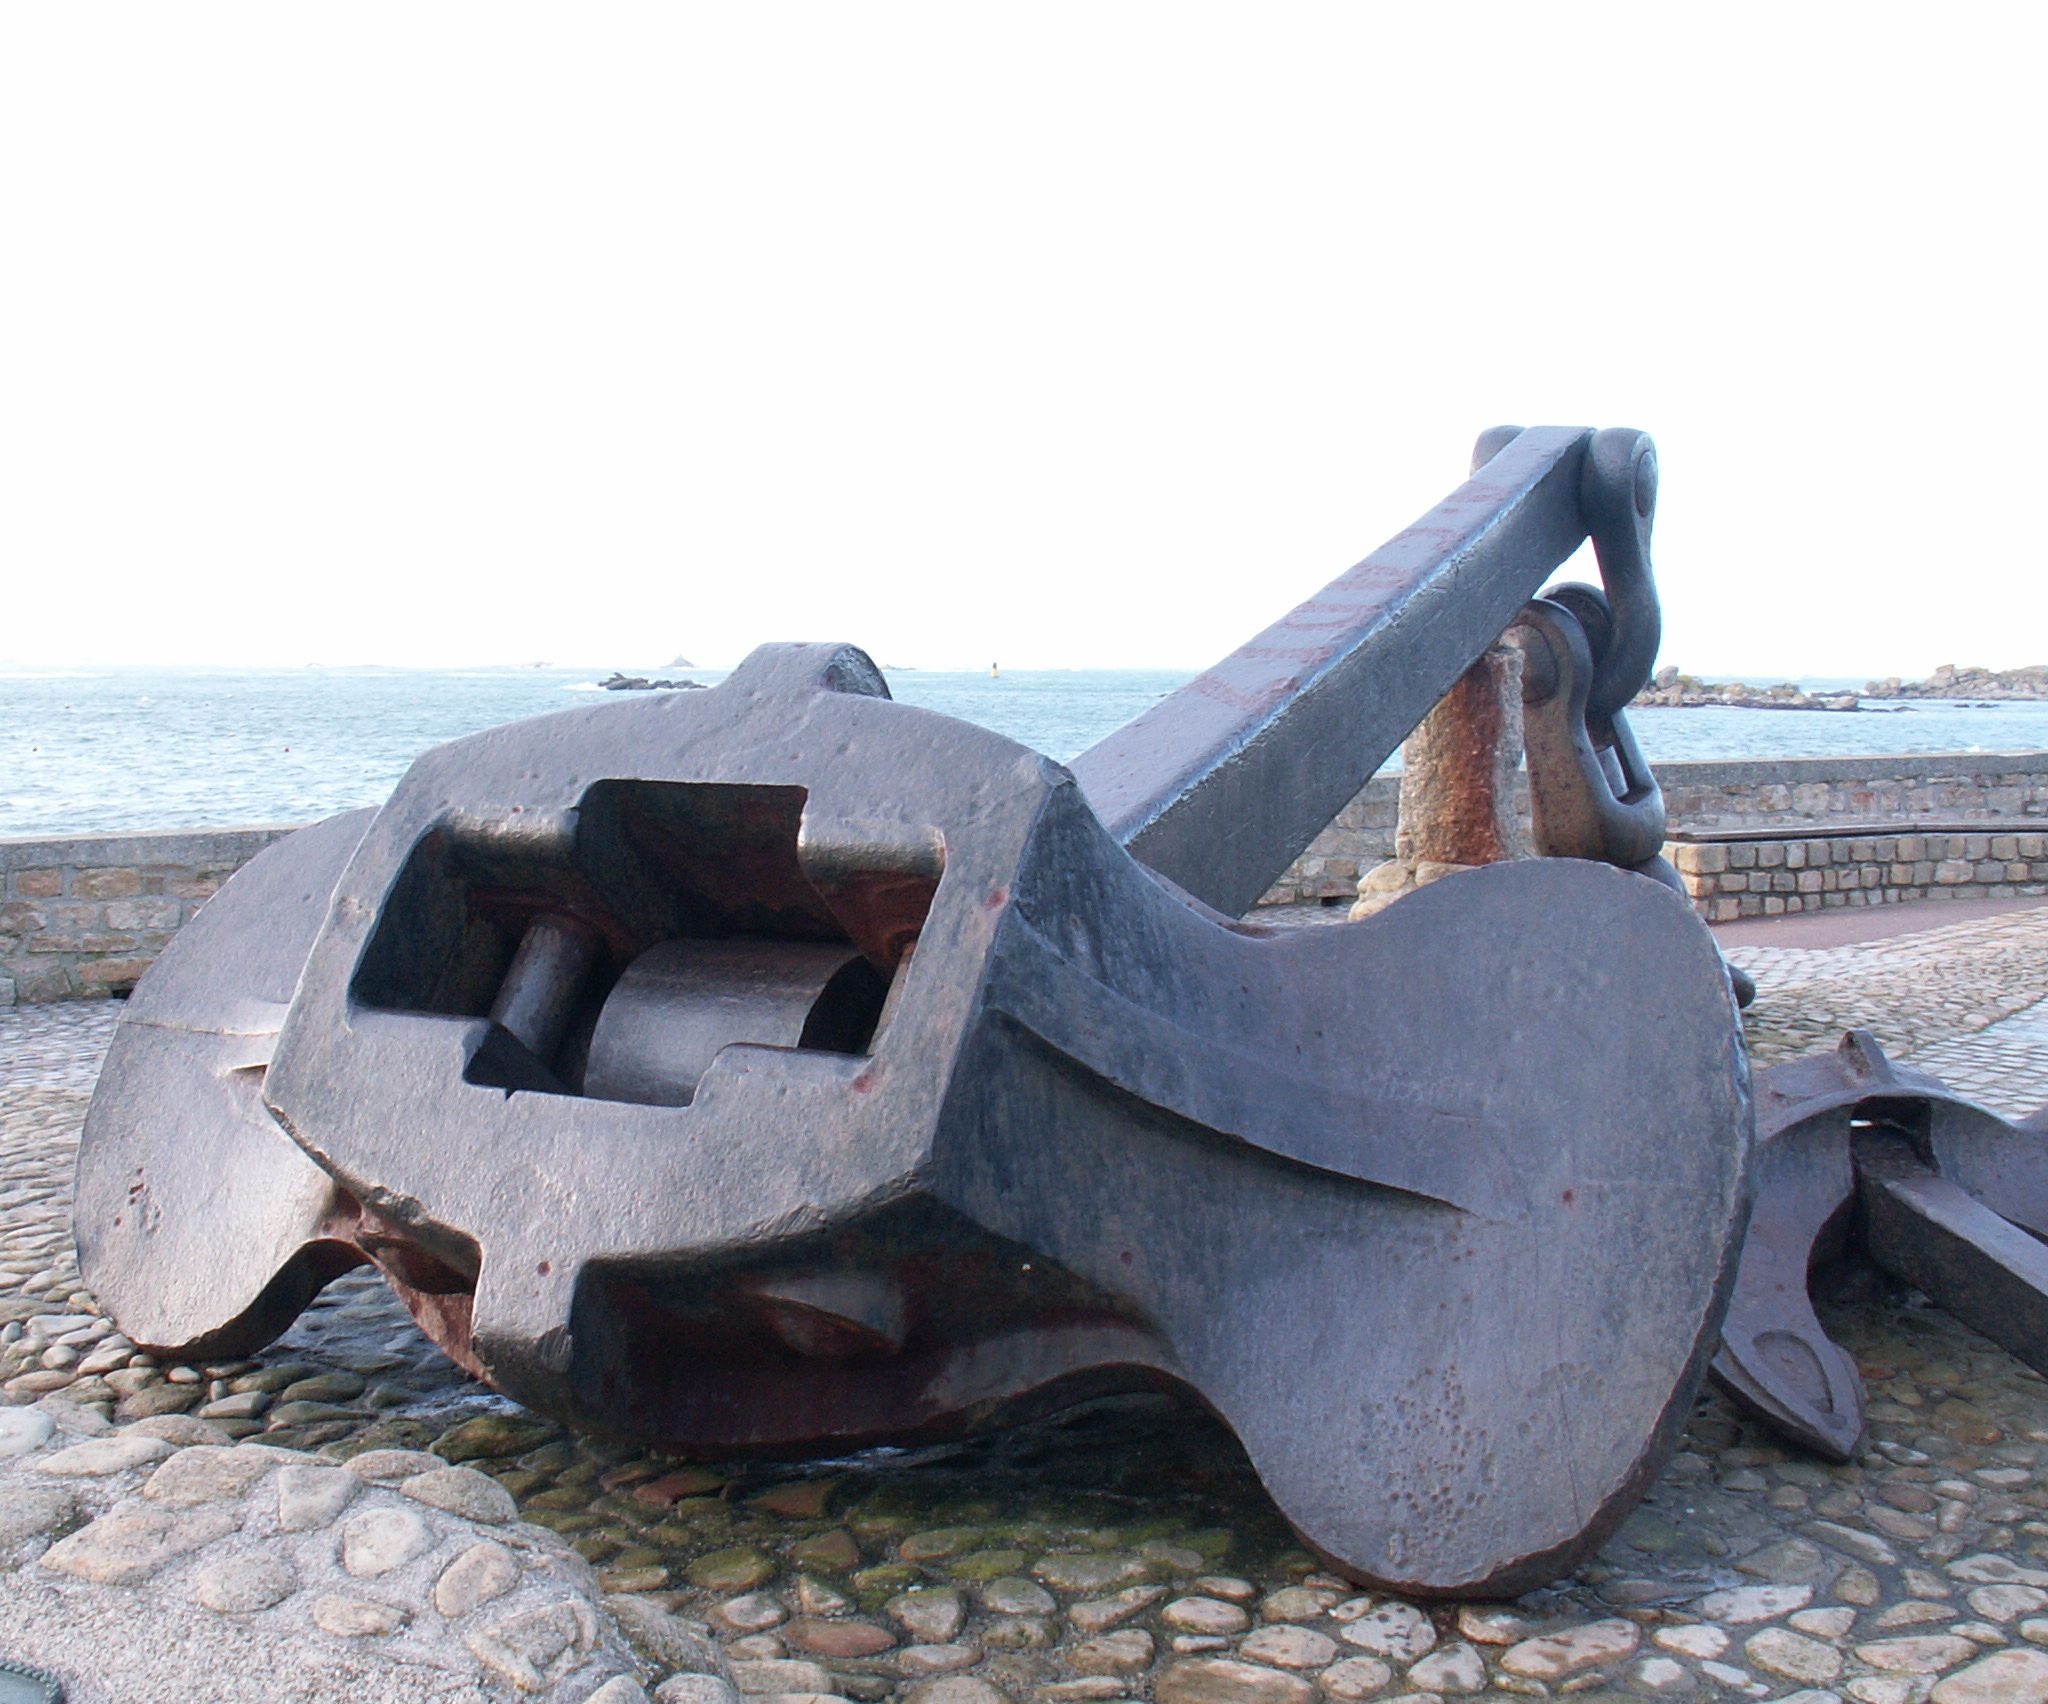 Dit is het anker van de mammoettanker Amoco Cadiz. Het herinnert aan de ramp met het schip voor de Bretonse kust in 1978.